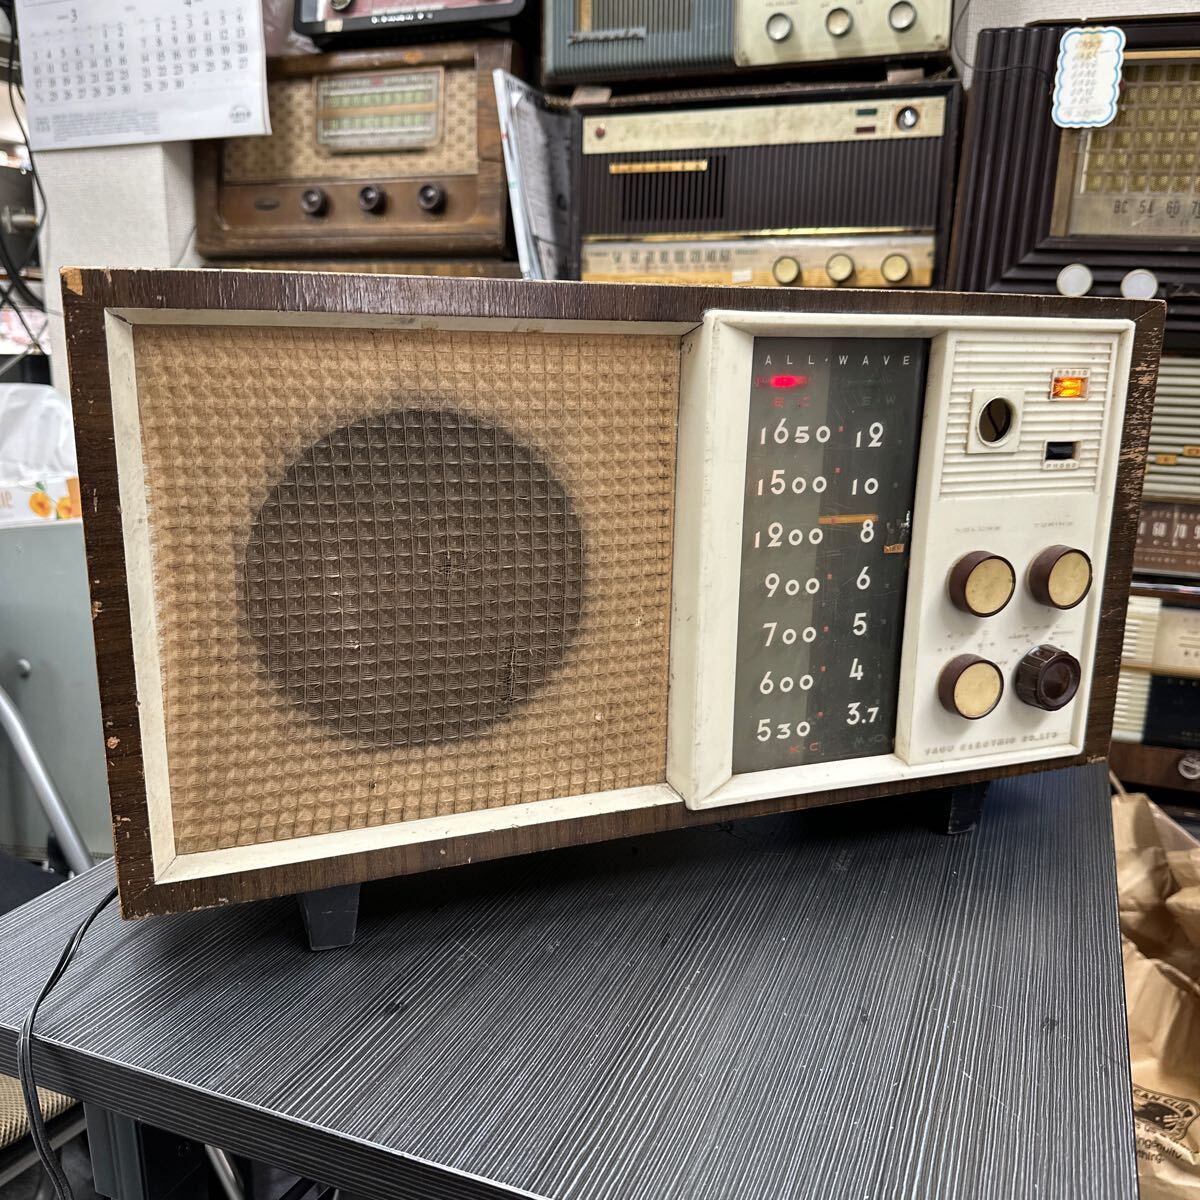 八欧電機 ゼネラル 6A330 真空管ラジオ アンティーク レトロ ラジオ 昭和レトロの画像1